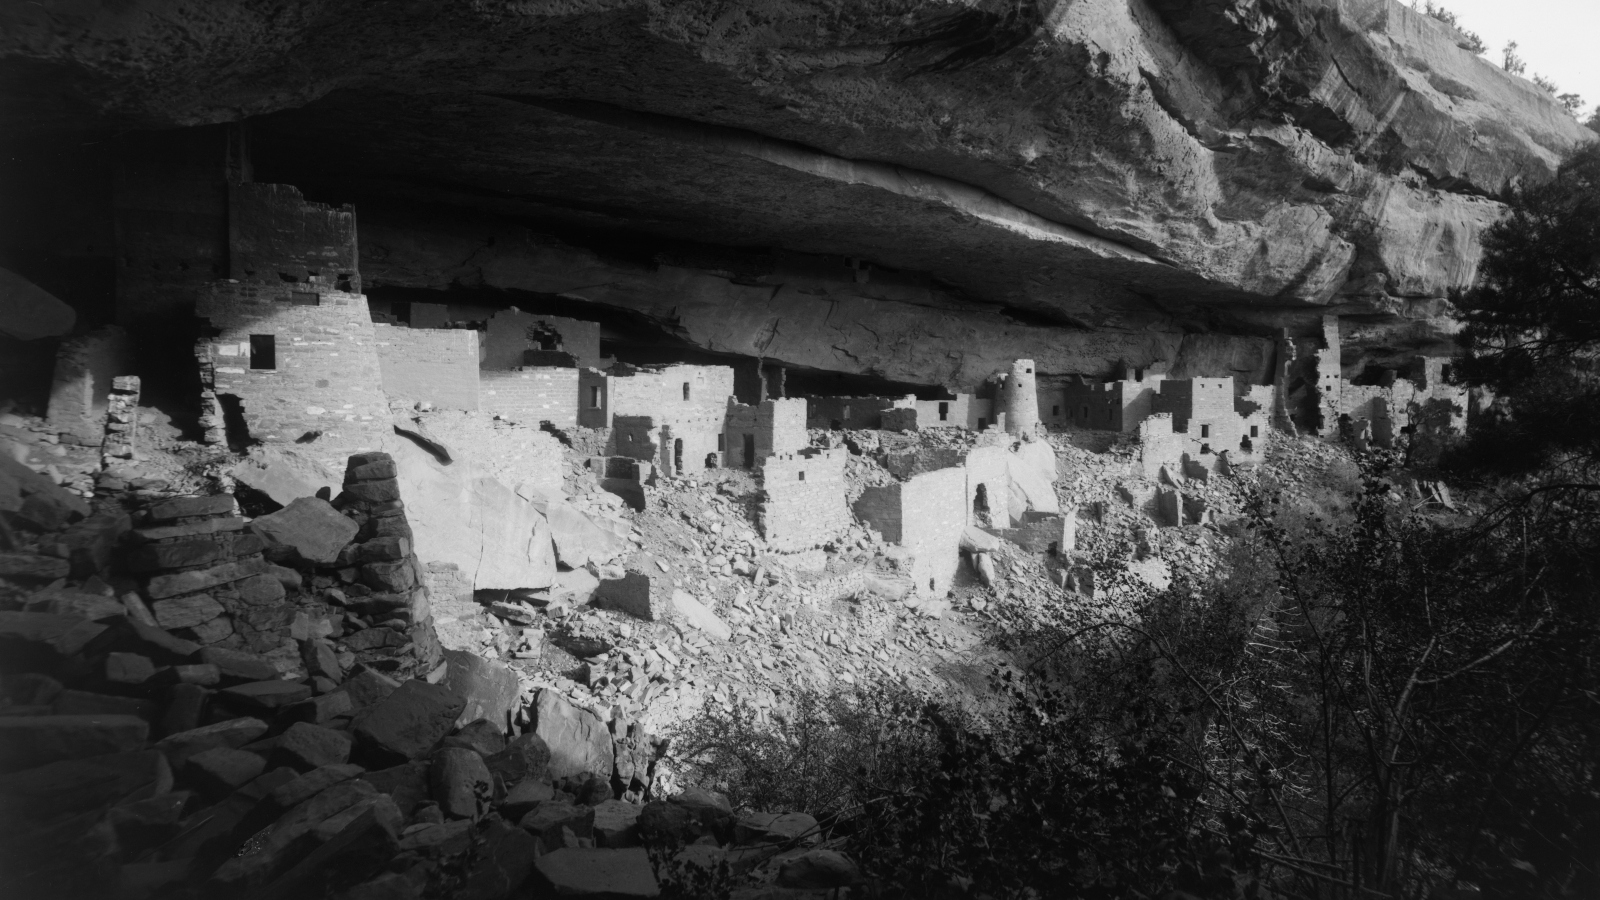 Kuvassa on Mesa Verden asuinalue ja kuva on musta-valkoinen.